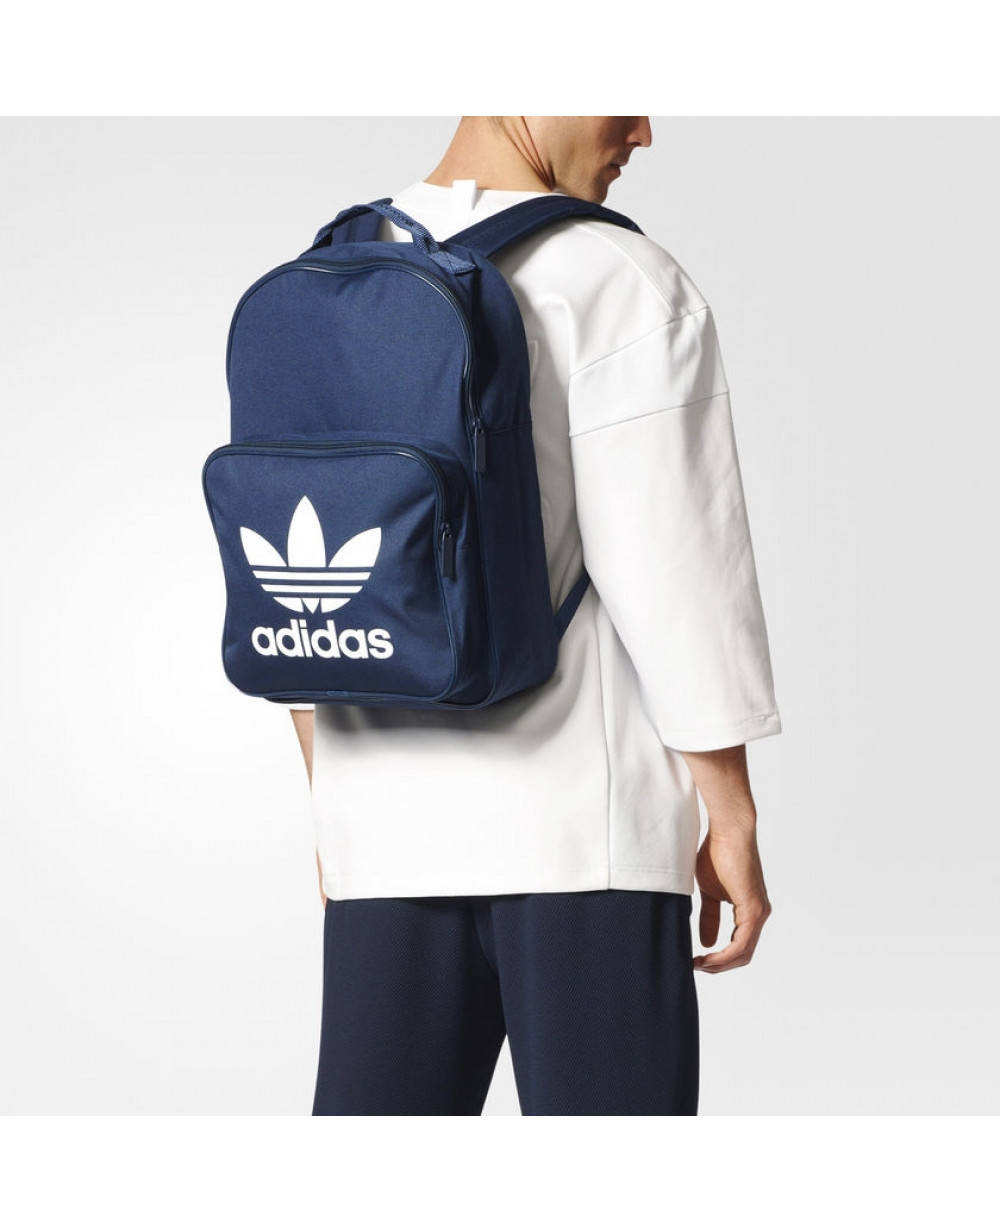 Adidas Trefoil Backpack For Men BK6724